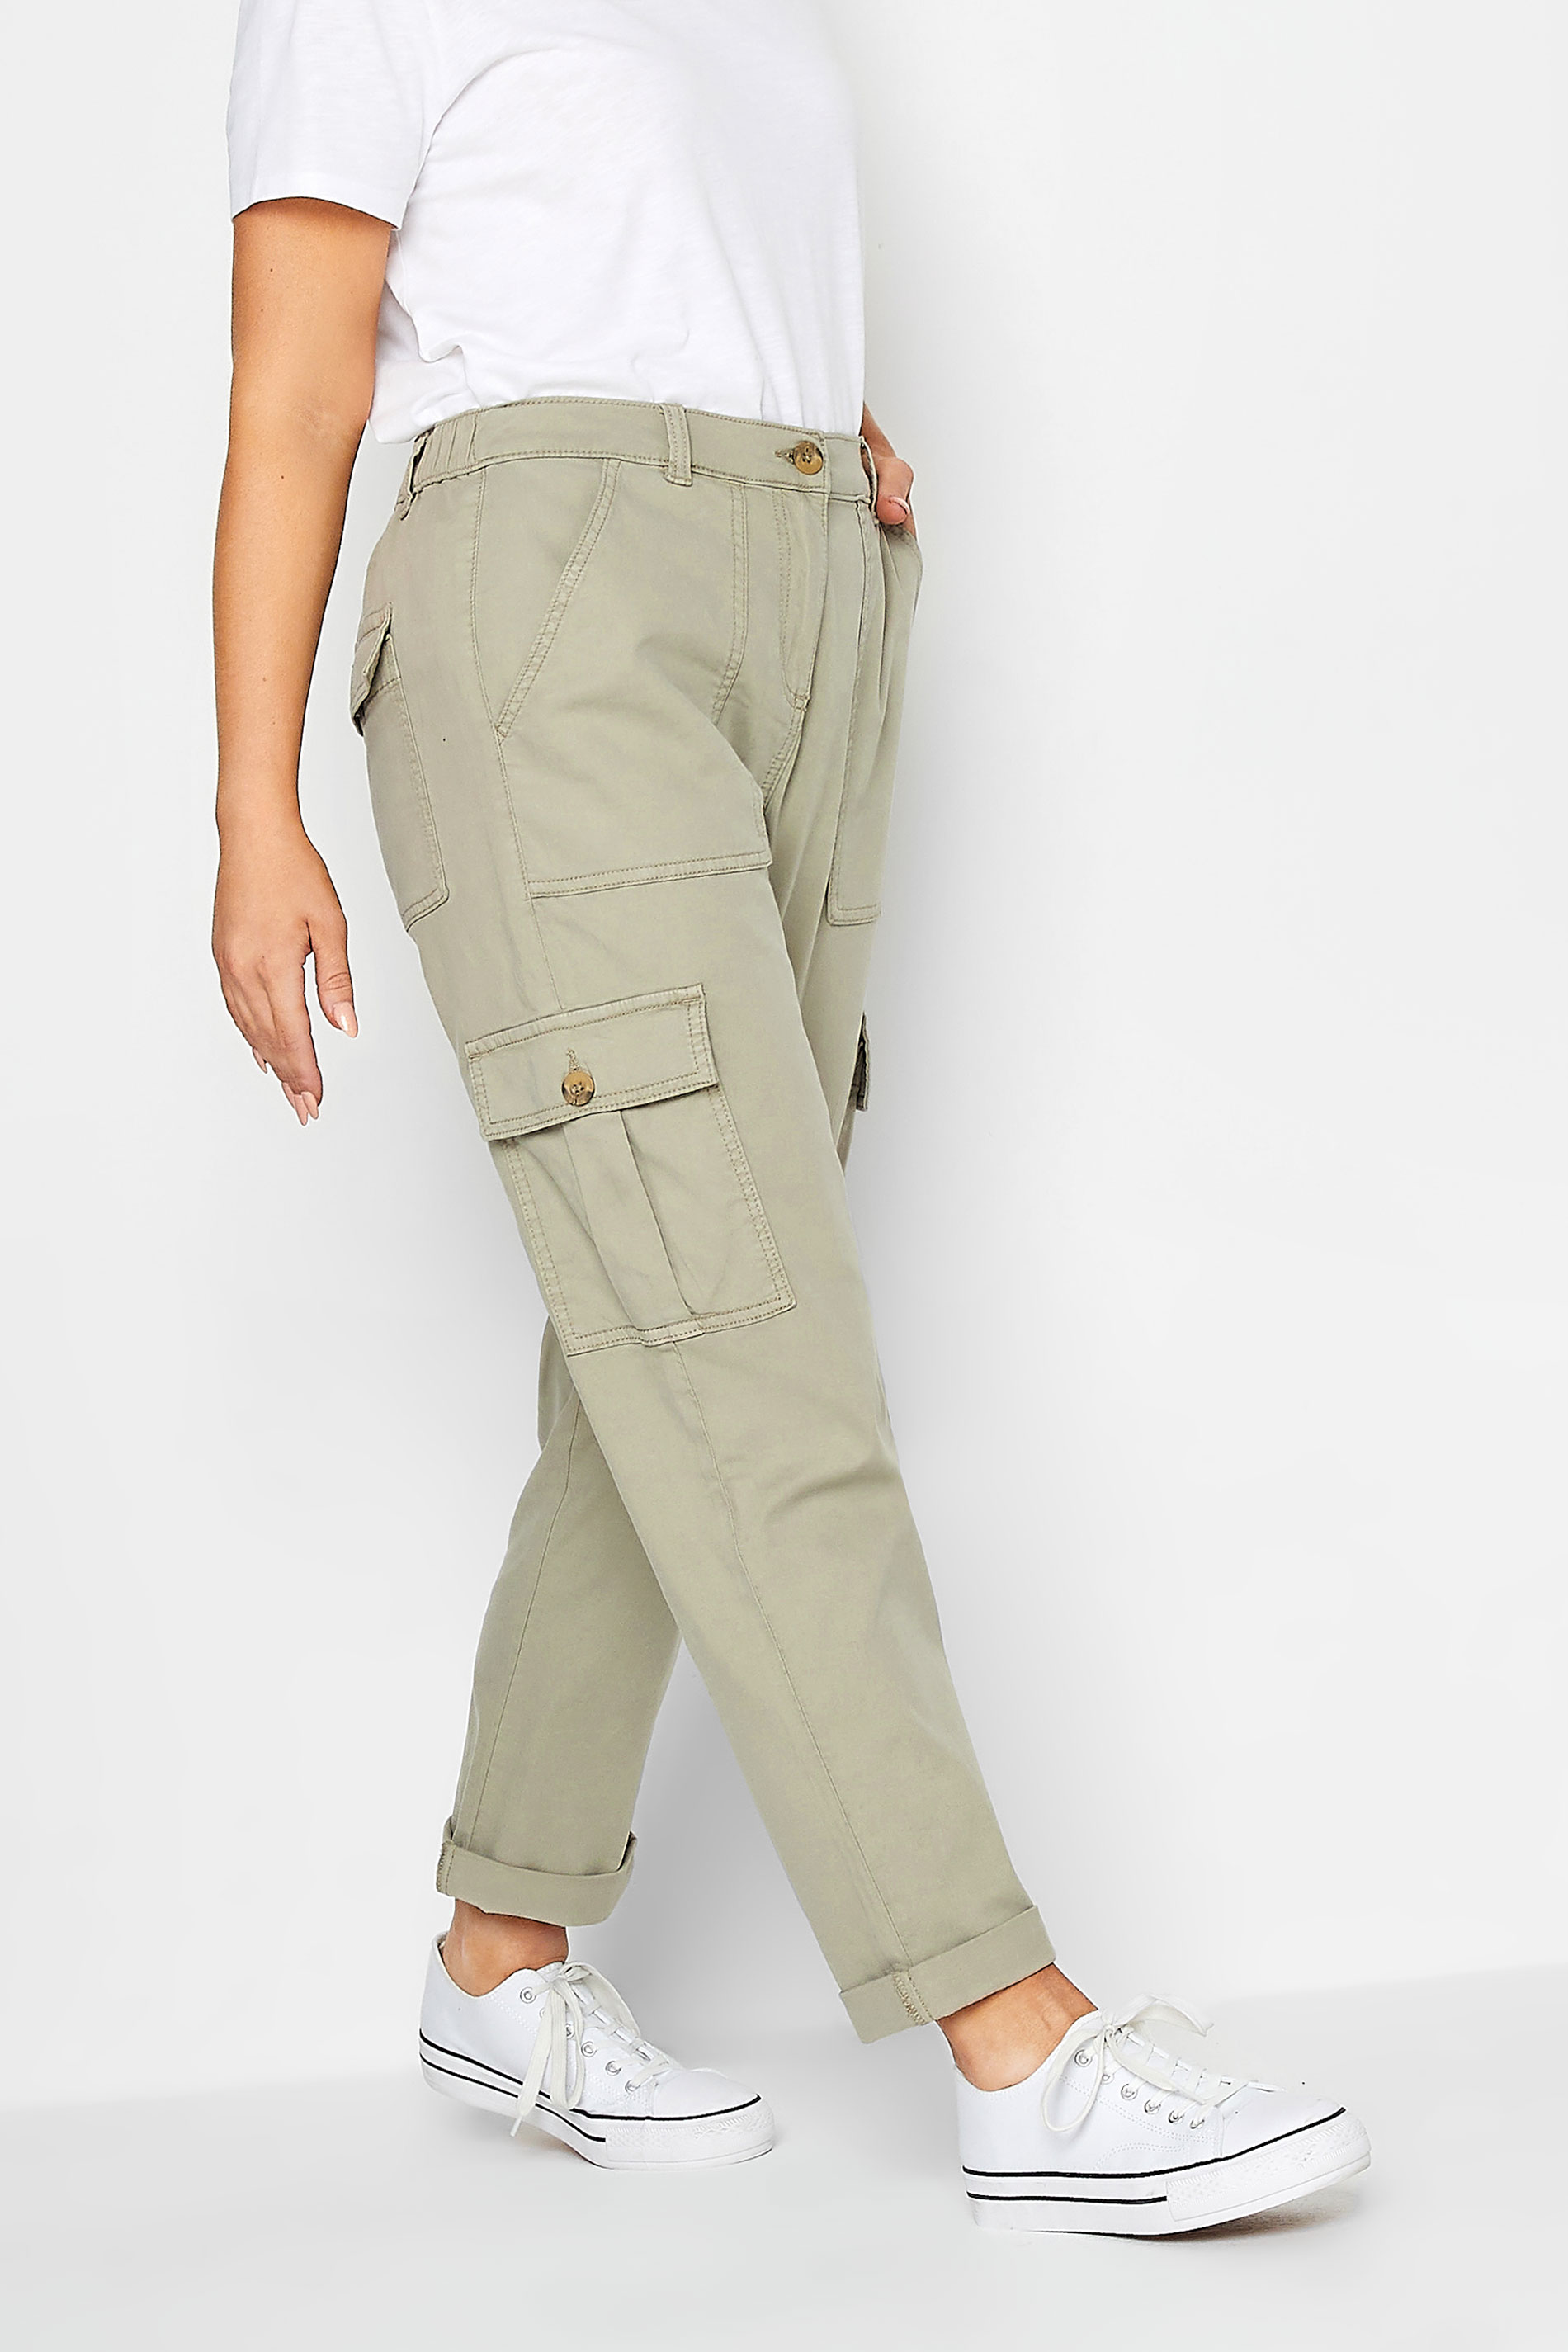 PixieGirl Women's Petite Khaki Green Cargo Trousers | eBay